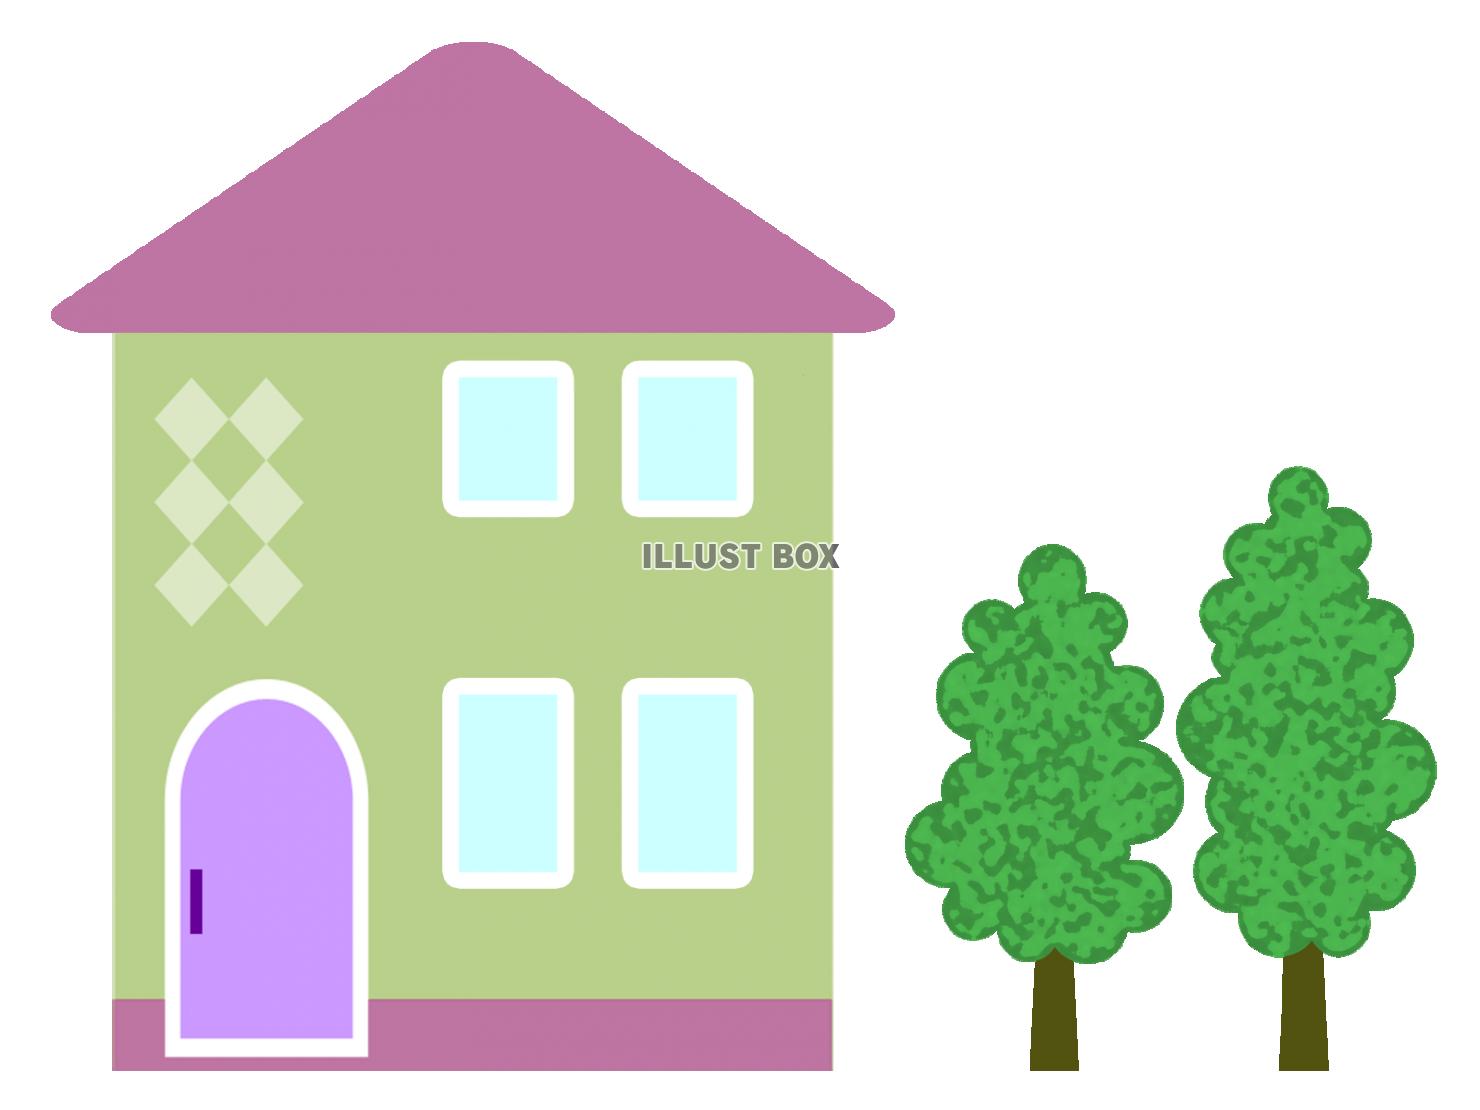 お家の壁紙画像シンプルマイホーム背景素材イラスト透過png